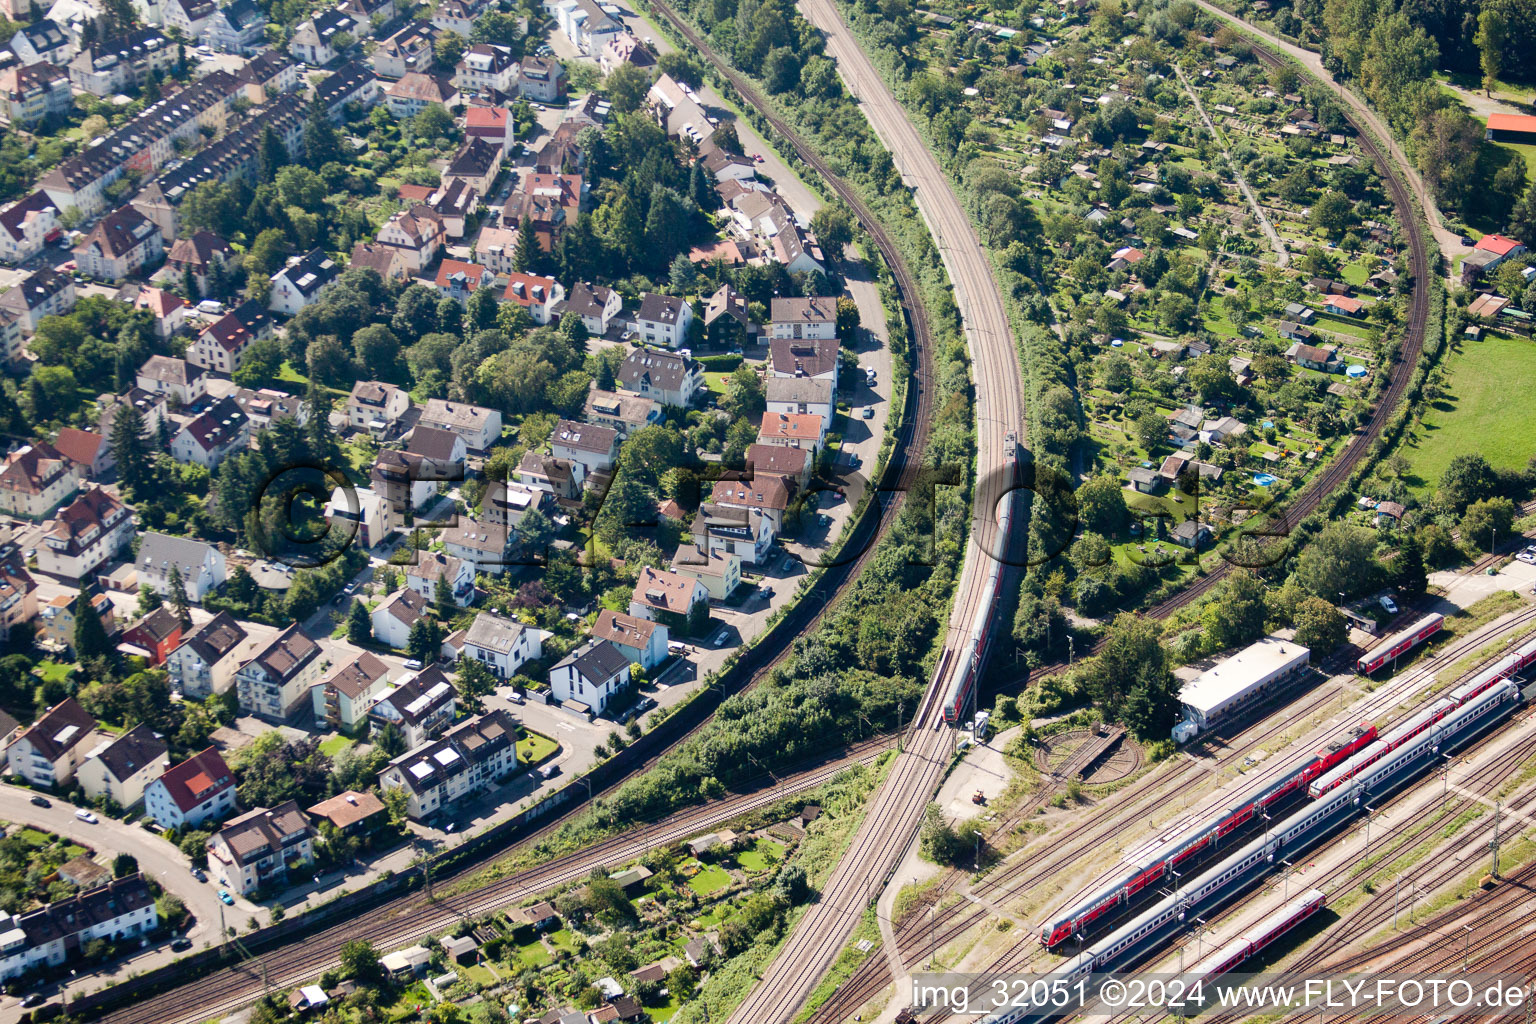 Tracé du passage à niveau des systèmes ferroviaires et ferroviaires de la Deutsche Bahn à le quartier Beiertheim-Bulach in Karlsruhe dans le département Bade-Wurtemberg, Allemagne vue d'en haut